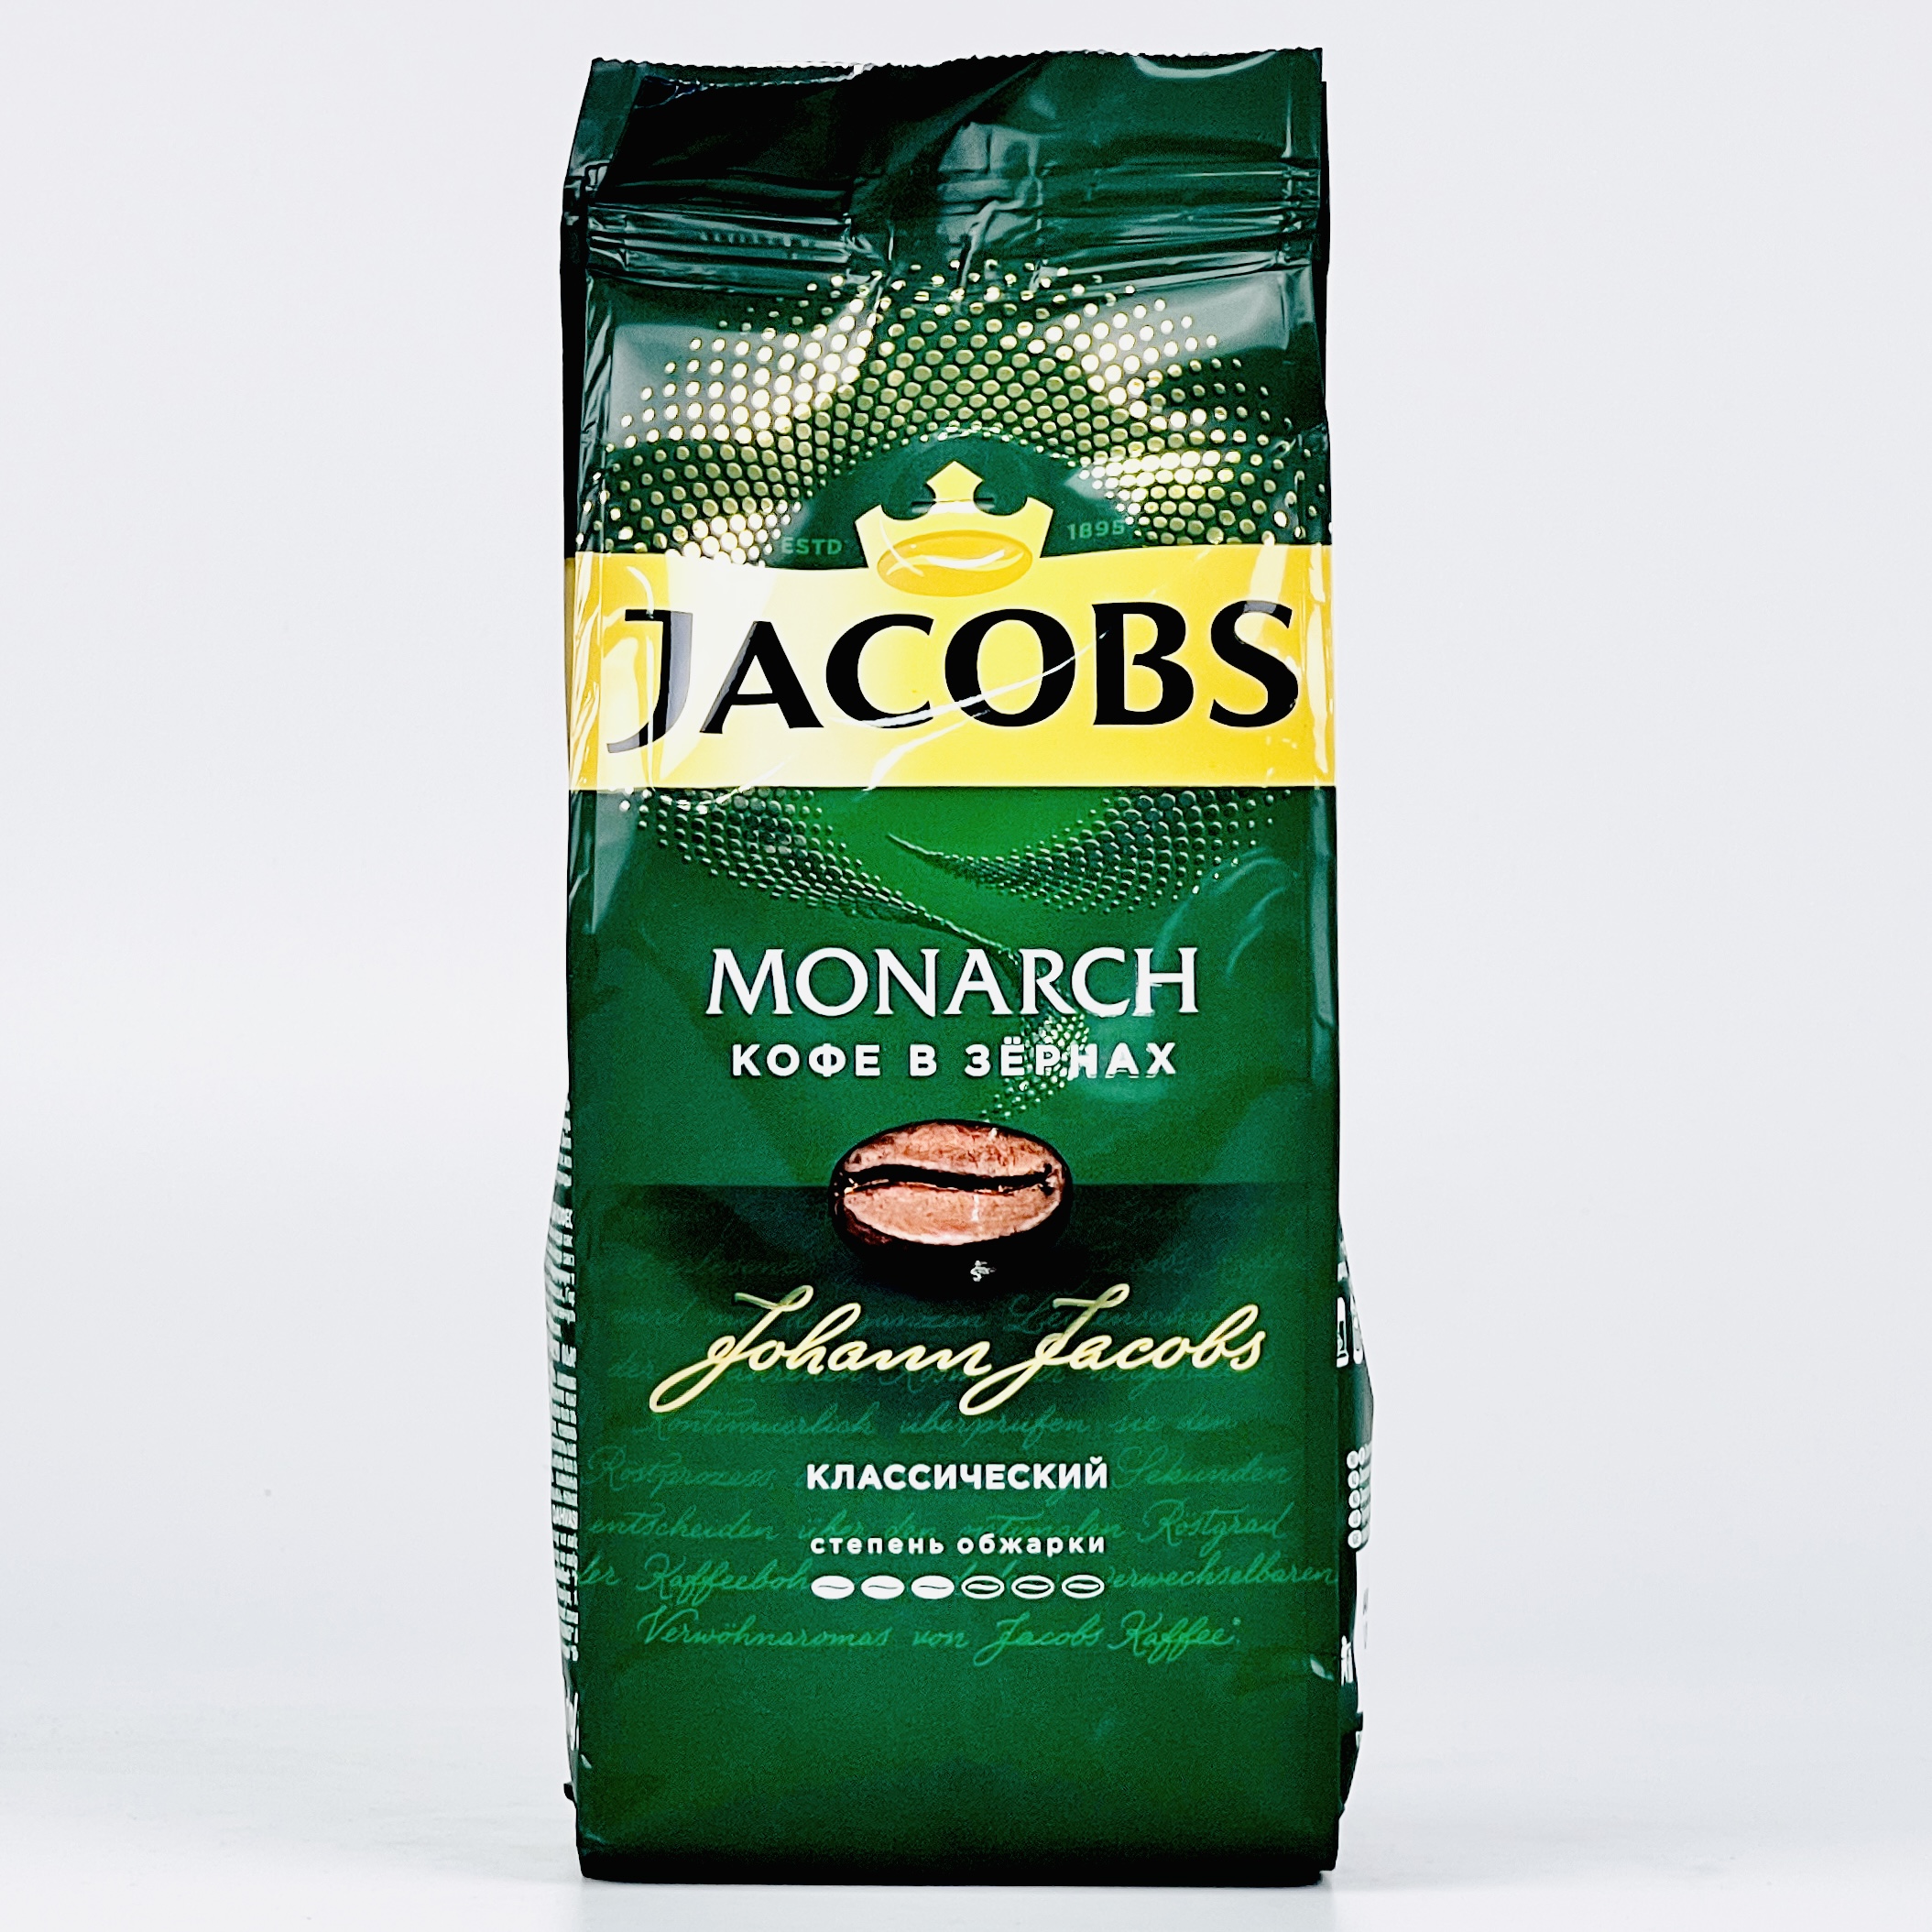 Jacobs кофе в зернах. Jacobs Monarch в зернах. Кофе в зернах Jacobs Monarch. Якобс в зернах 800 грамм. Рейтинг хорошего кофе в зернах отзывы